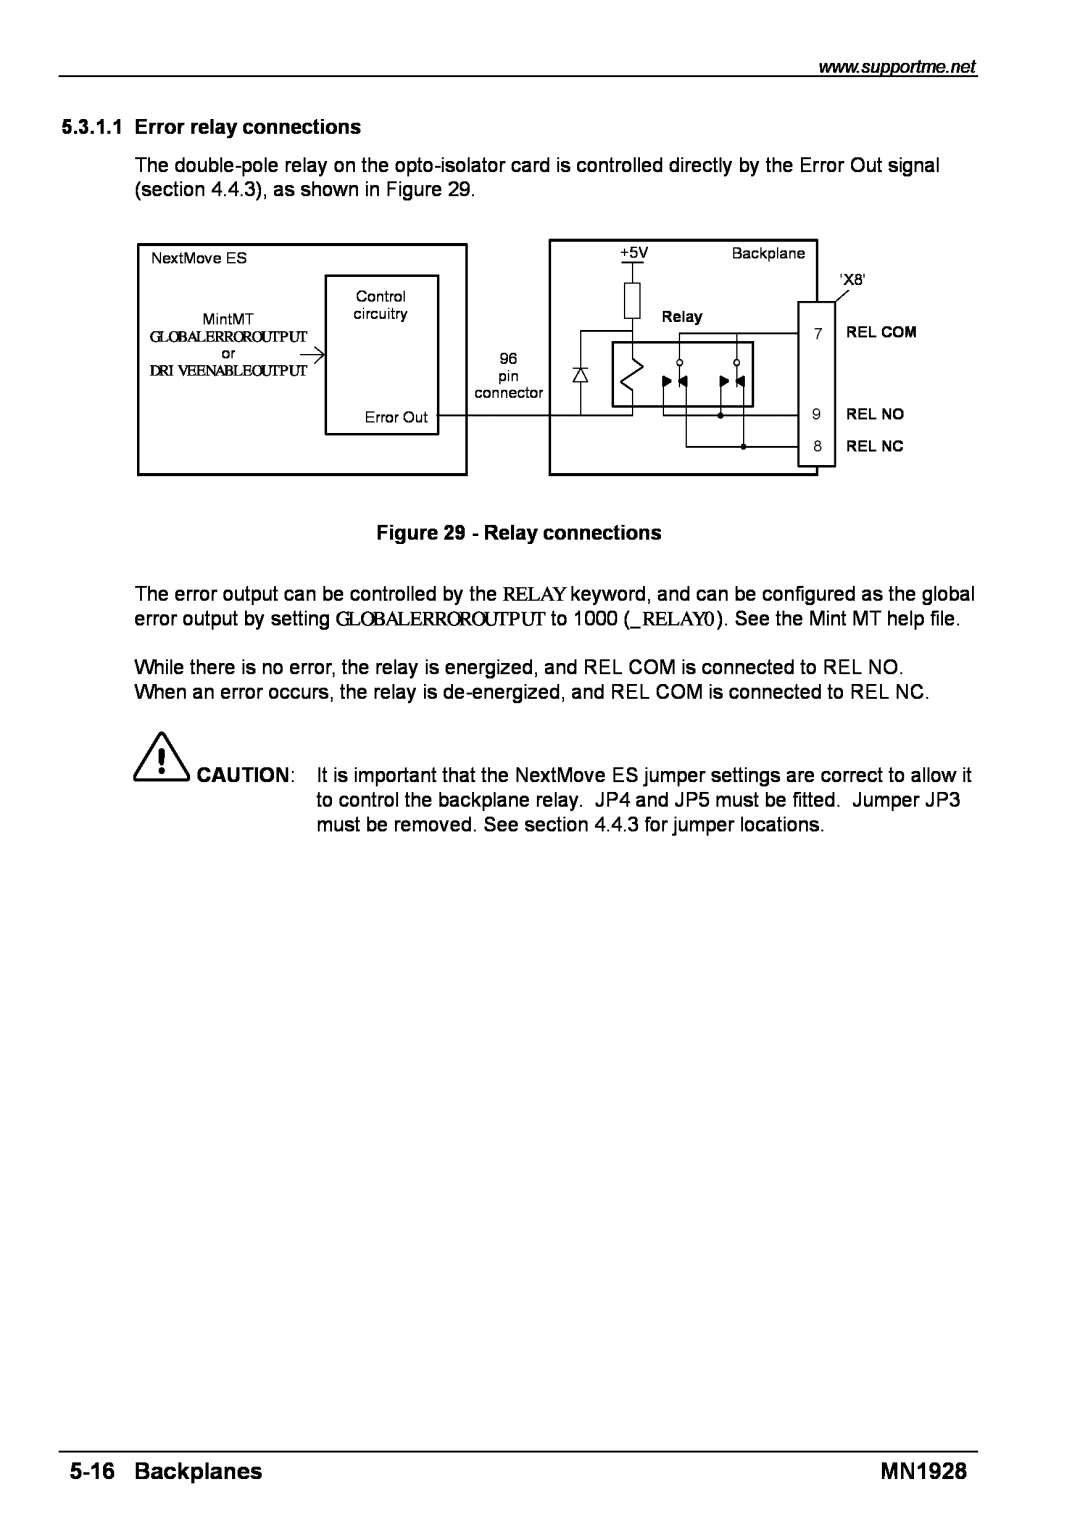 Baldor MN1928 installation manual Backplanes, Error relay connections, Relay connections, Rel No, Rel Nc 